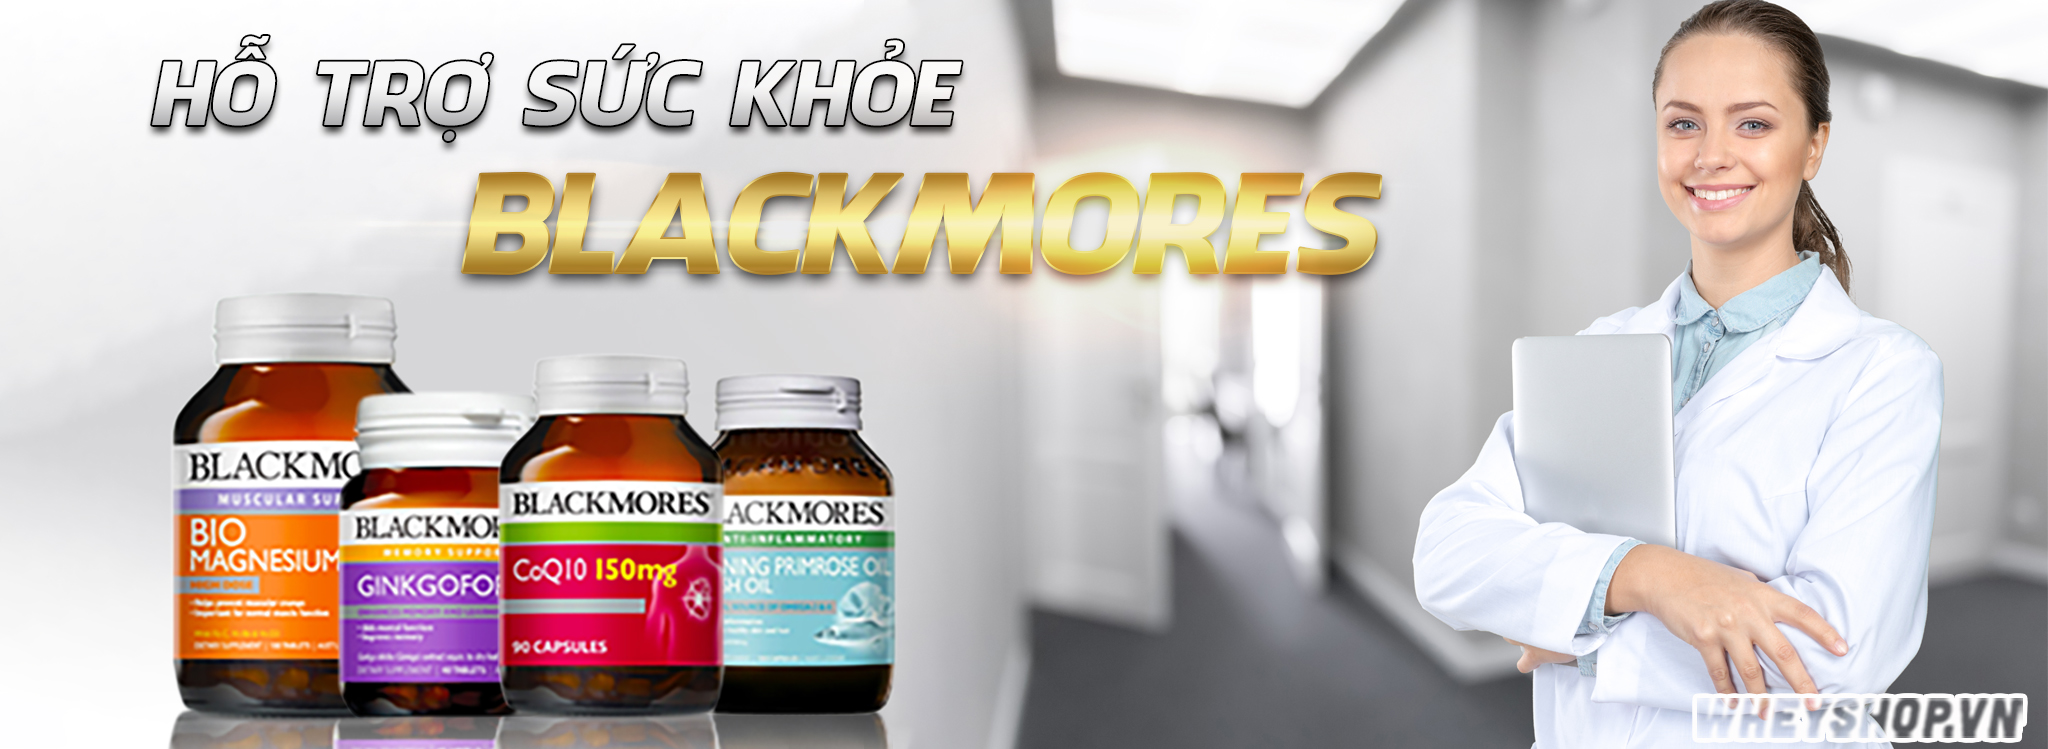 Thực phẩm chức năng Blackmores , chúng tôi cung cấp những sản phẩm thuốc blackmores, vitamin, khoáng chất chăm sóc sức khỏe của bạn, mang tới những lợi ích tốt nhất, đảm bảo an toàn sử dụng, 100% nguồn gốc tự nhiên